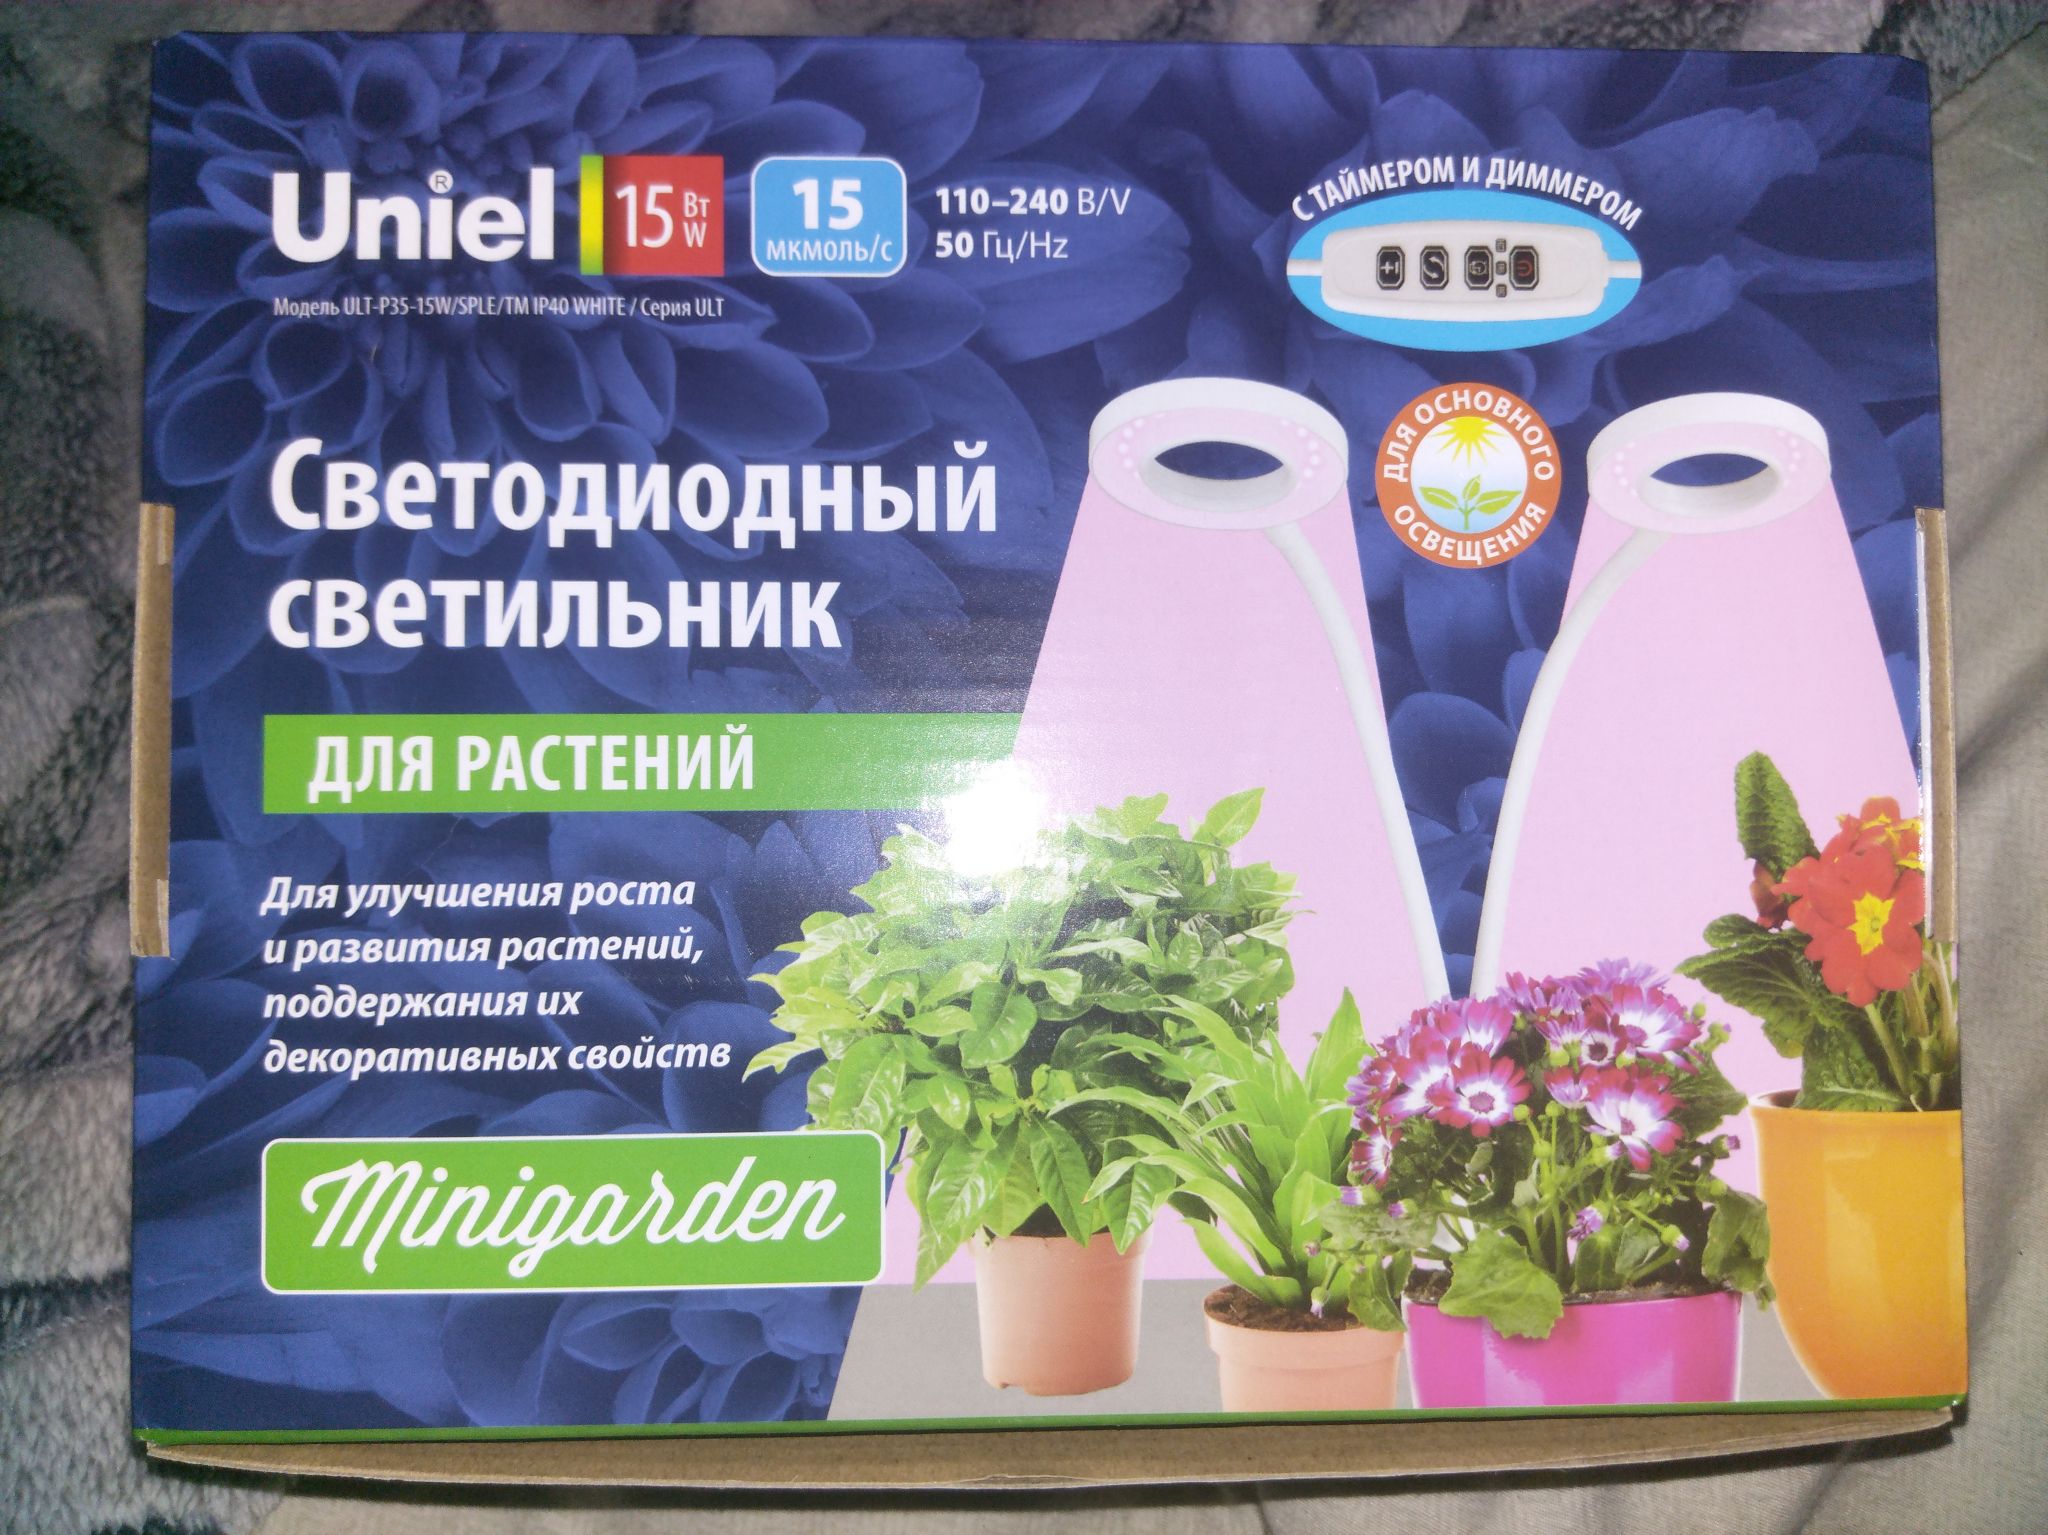 Лампа для растений Uniel Ult-p35-15w/sple/TM